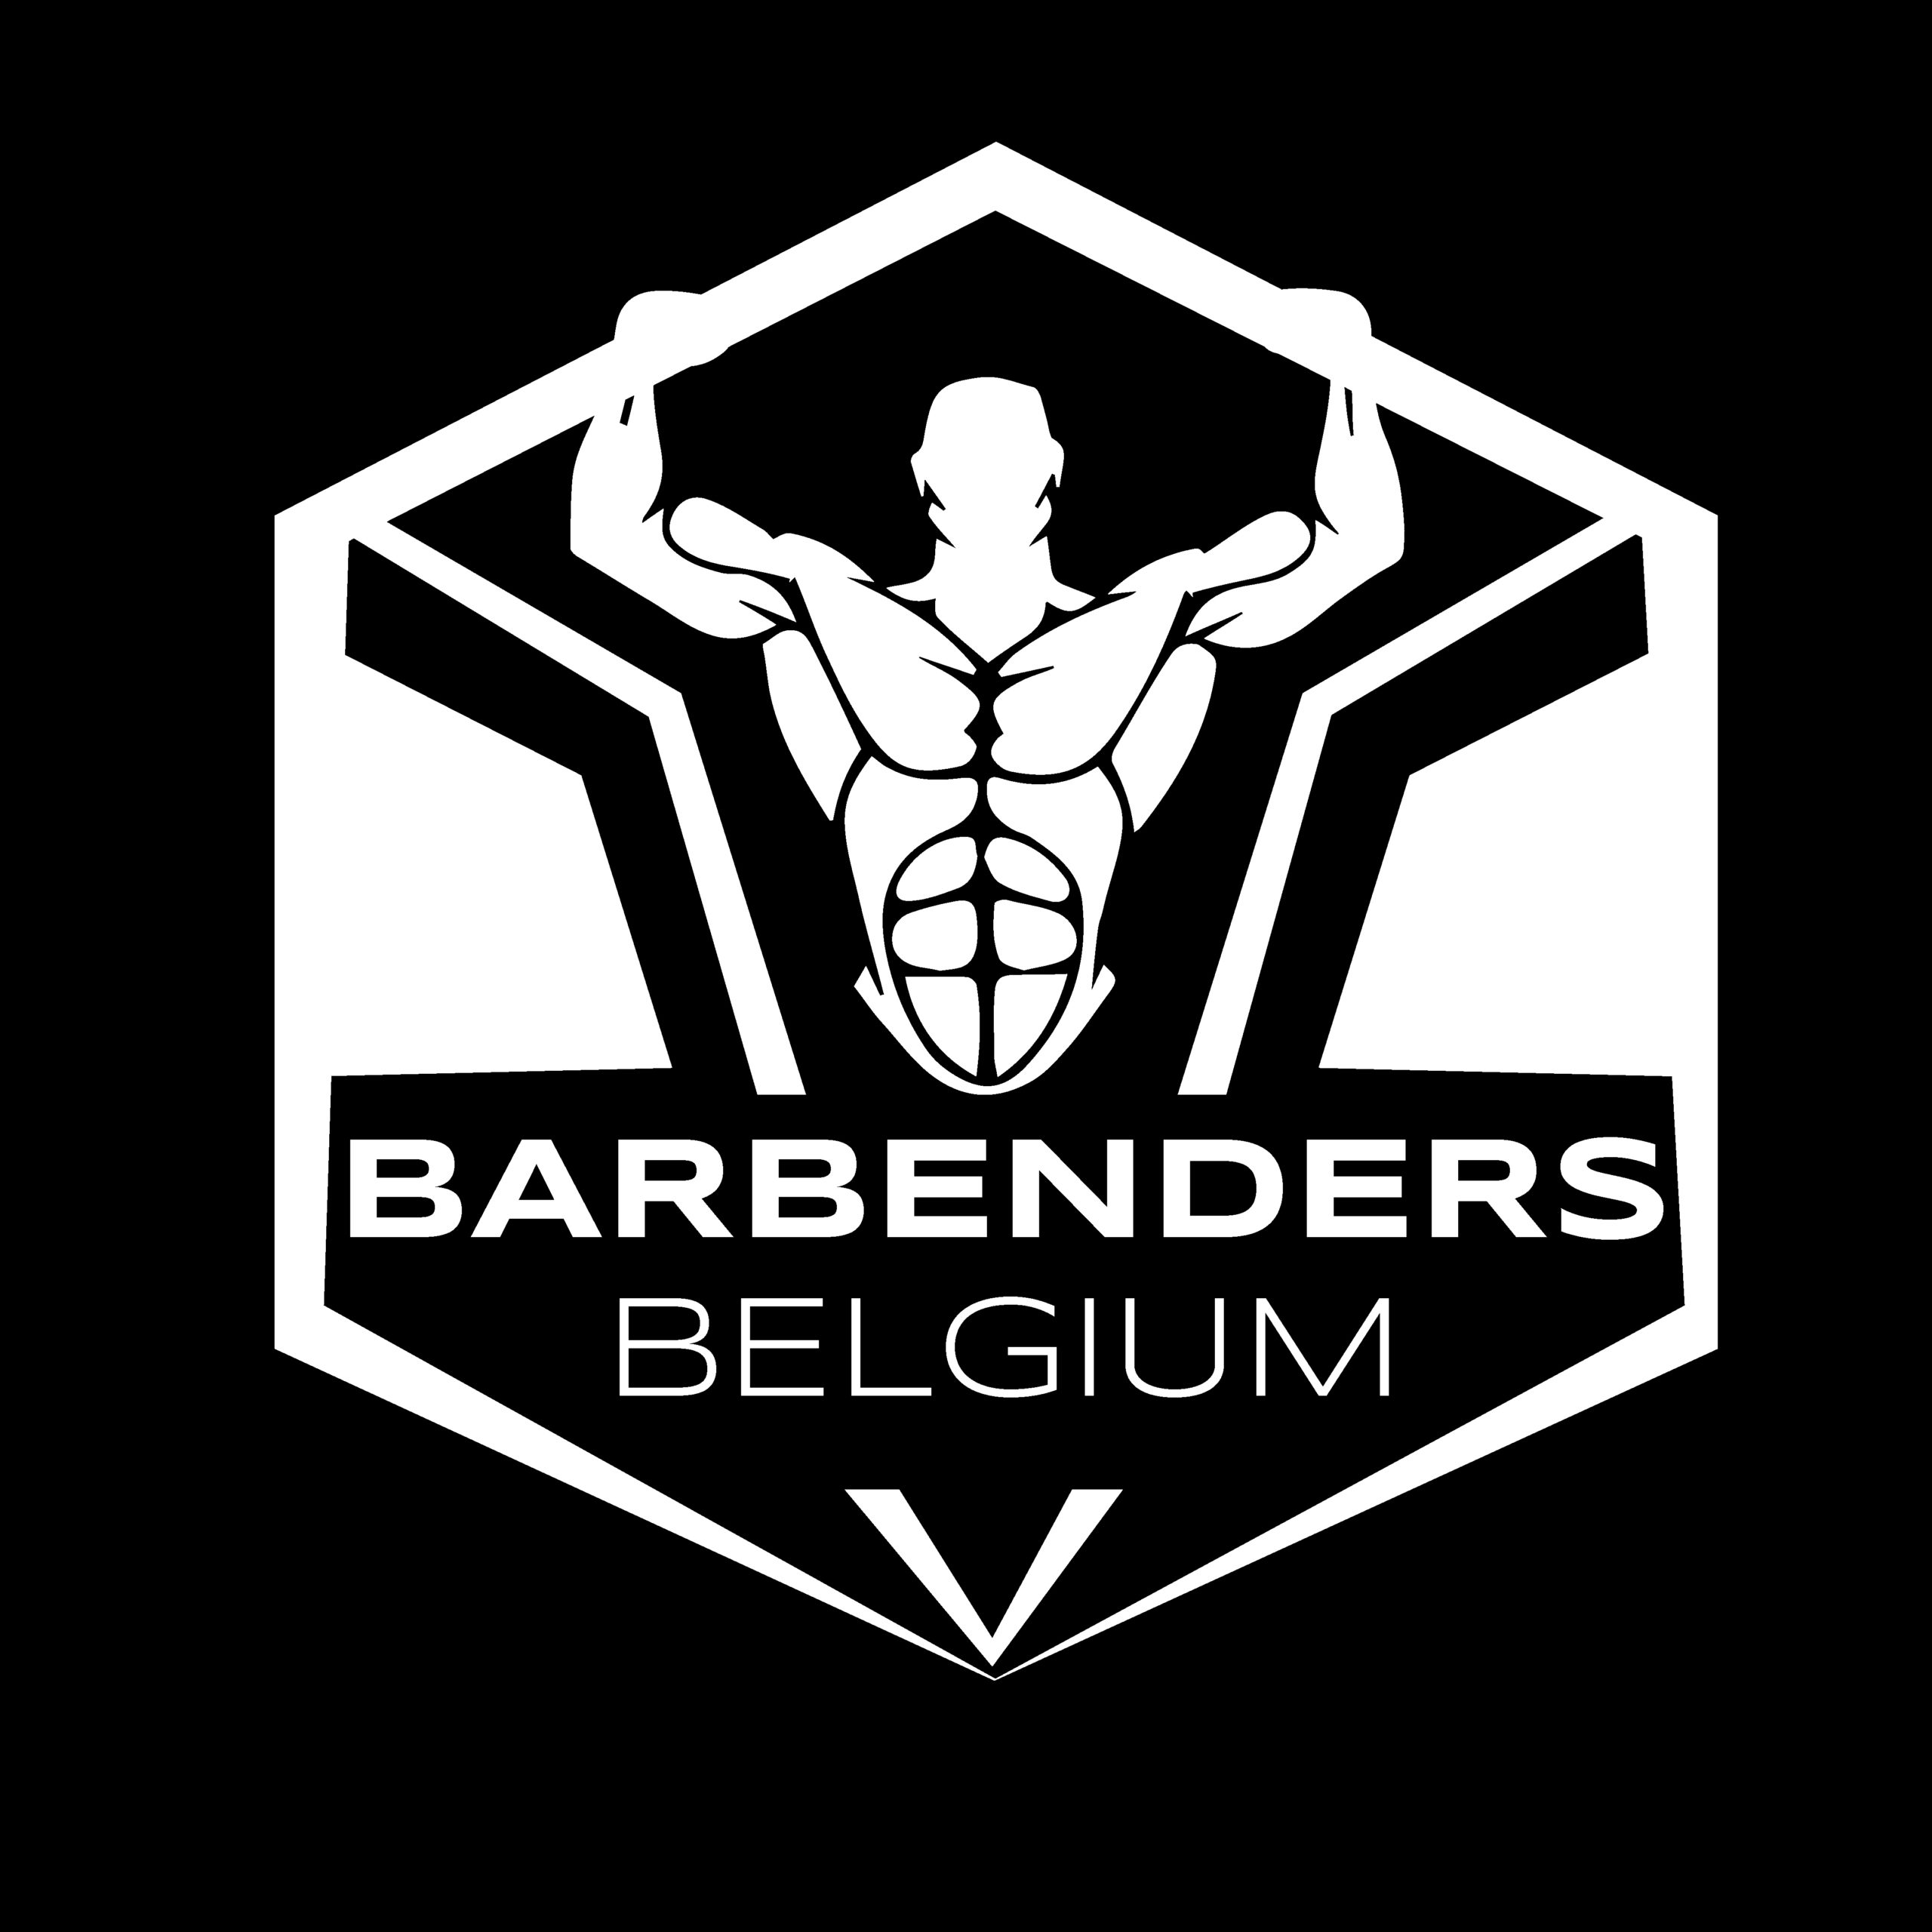 Barbenders Belgium